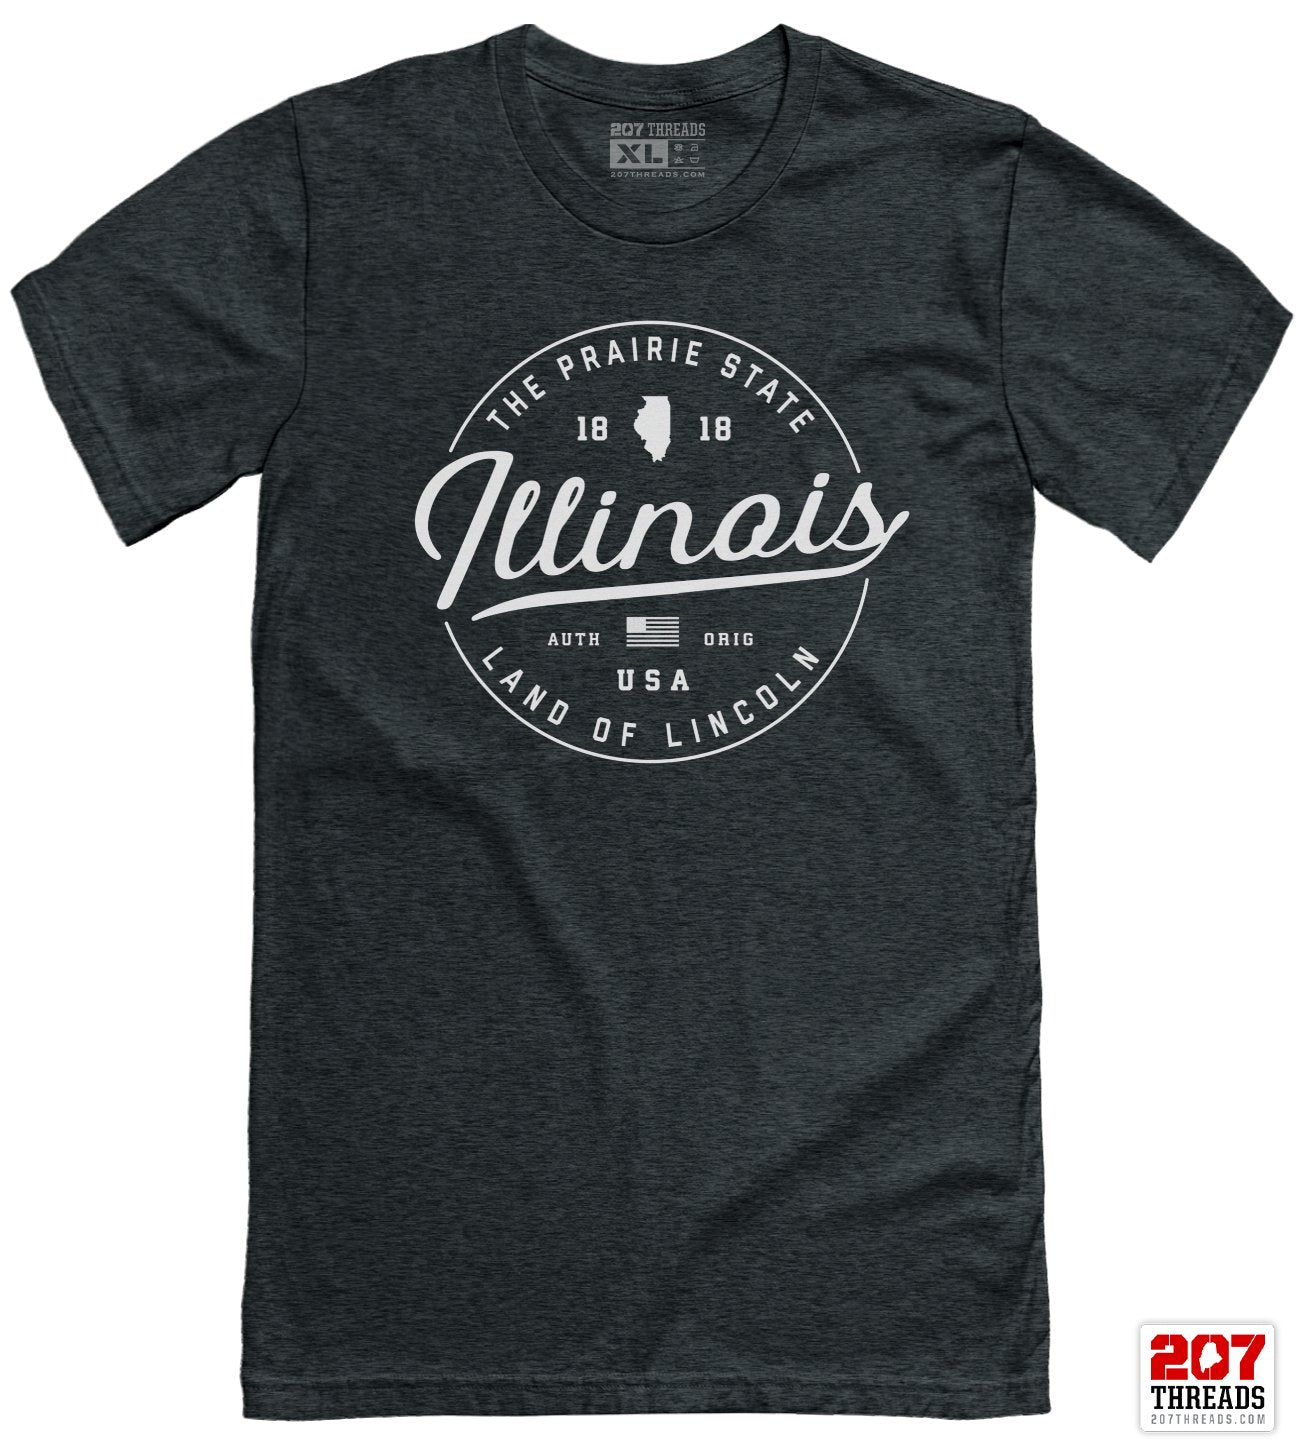 State of Illinois T-Shirt - Soft Illinois Tee